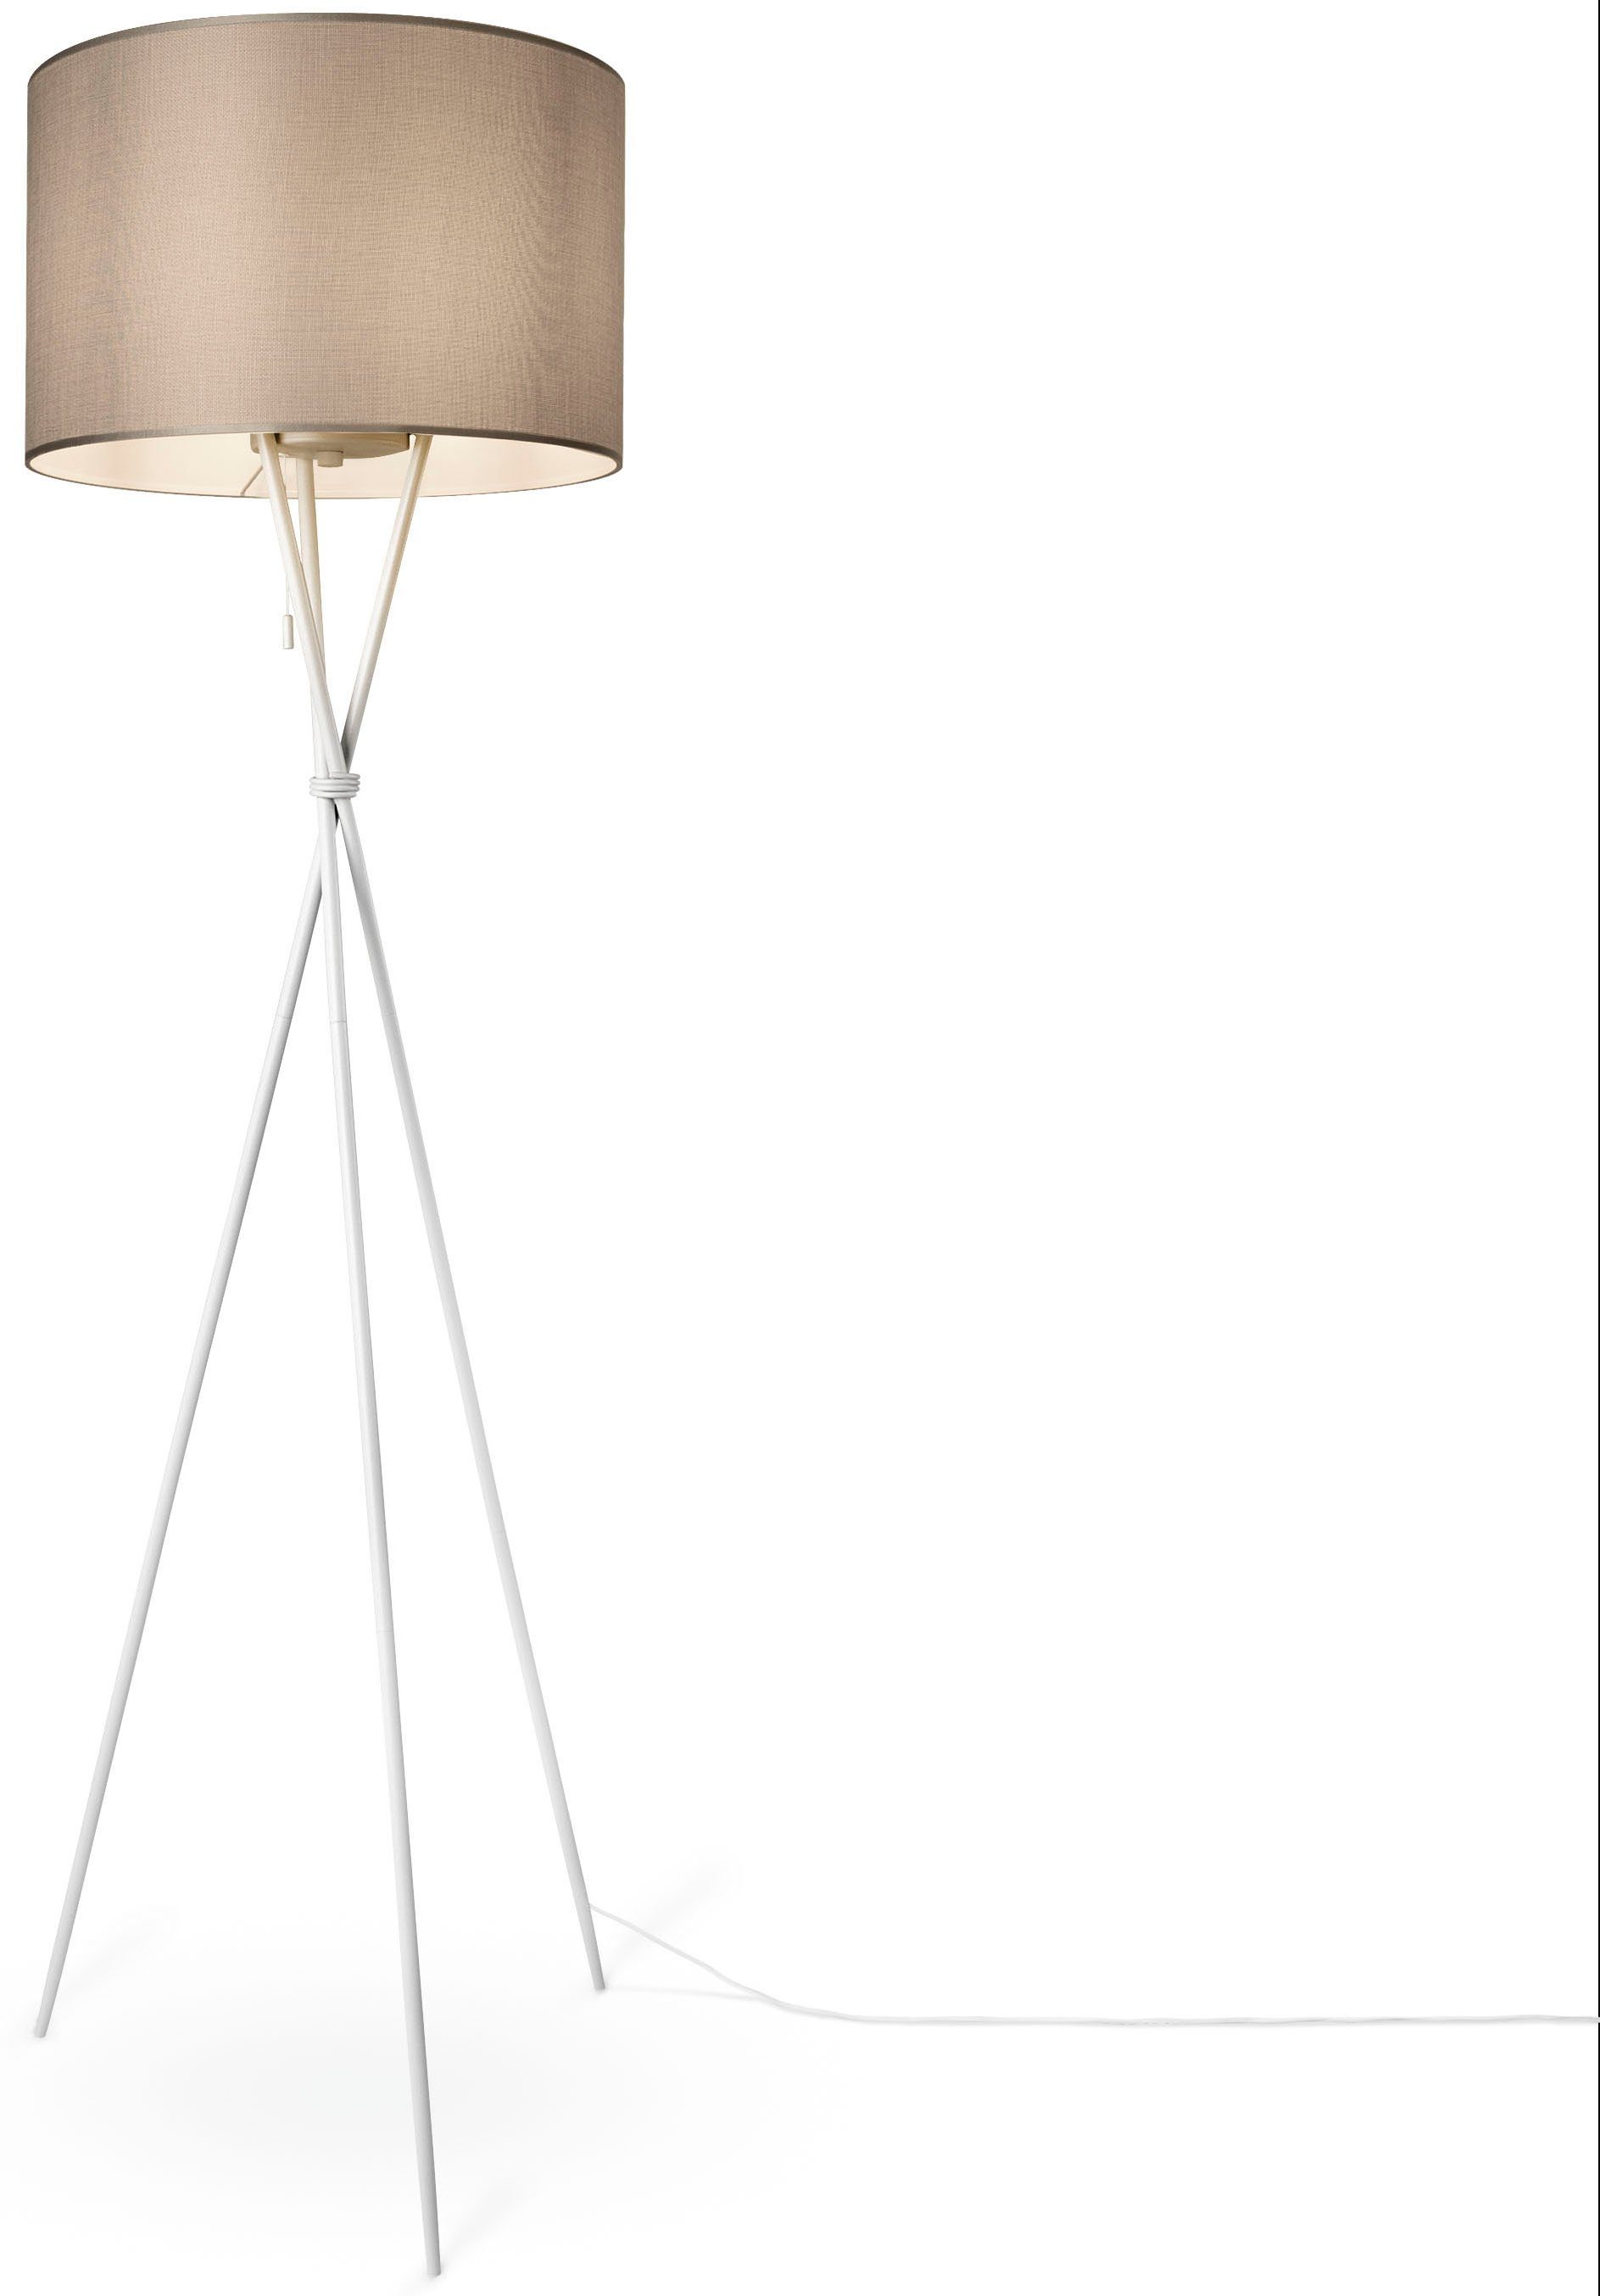 Textil Home Stehlampe UNI weiß Wohnzimmer CANVAS E27 Standleuchte Leuchtmittel, COLOR, grau ohne Paco Stoffschirmlampe Schirm Dreibein KATE